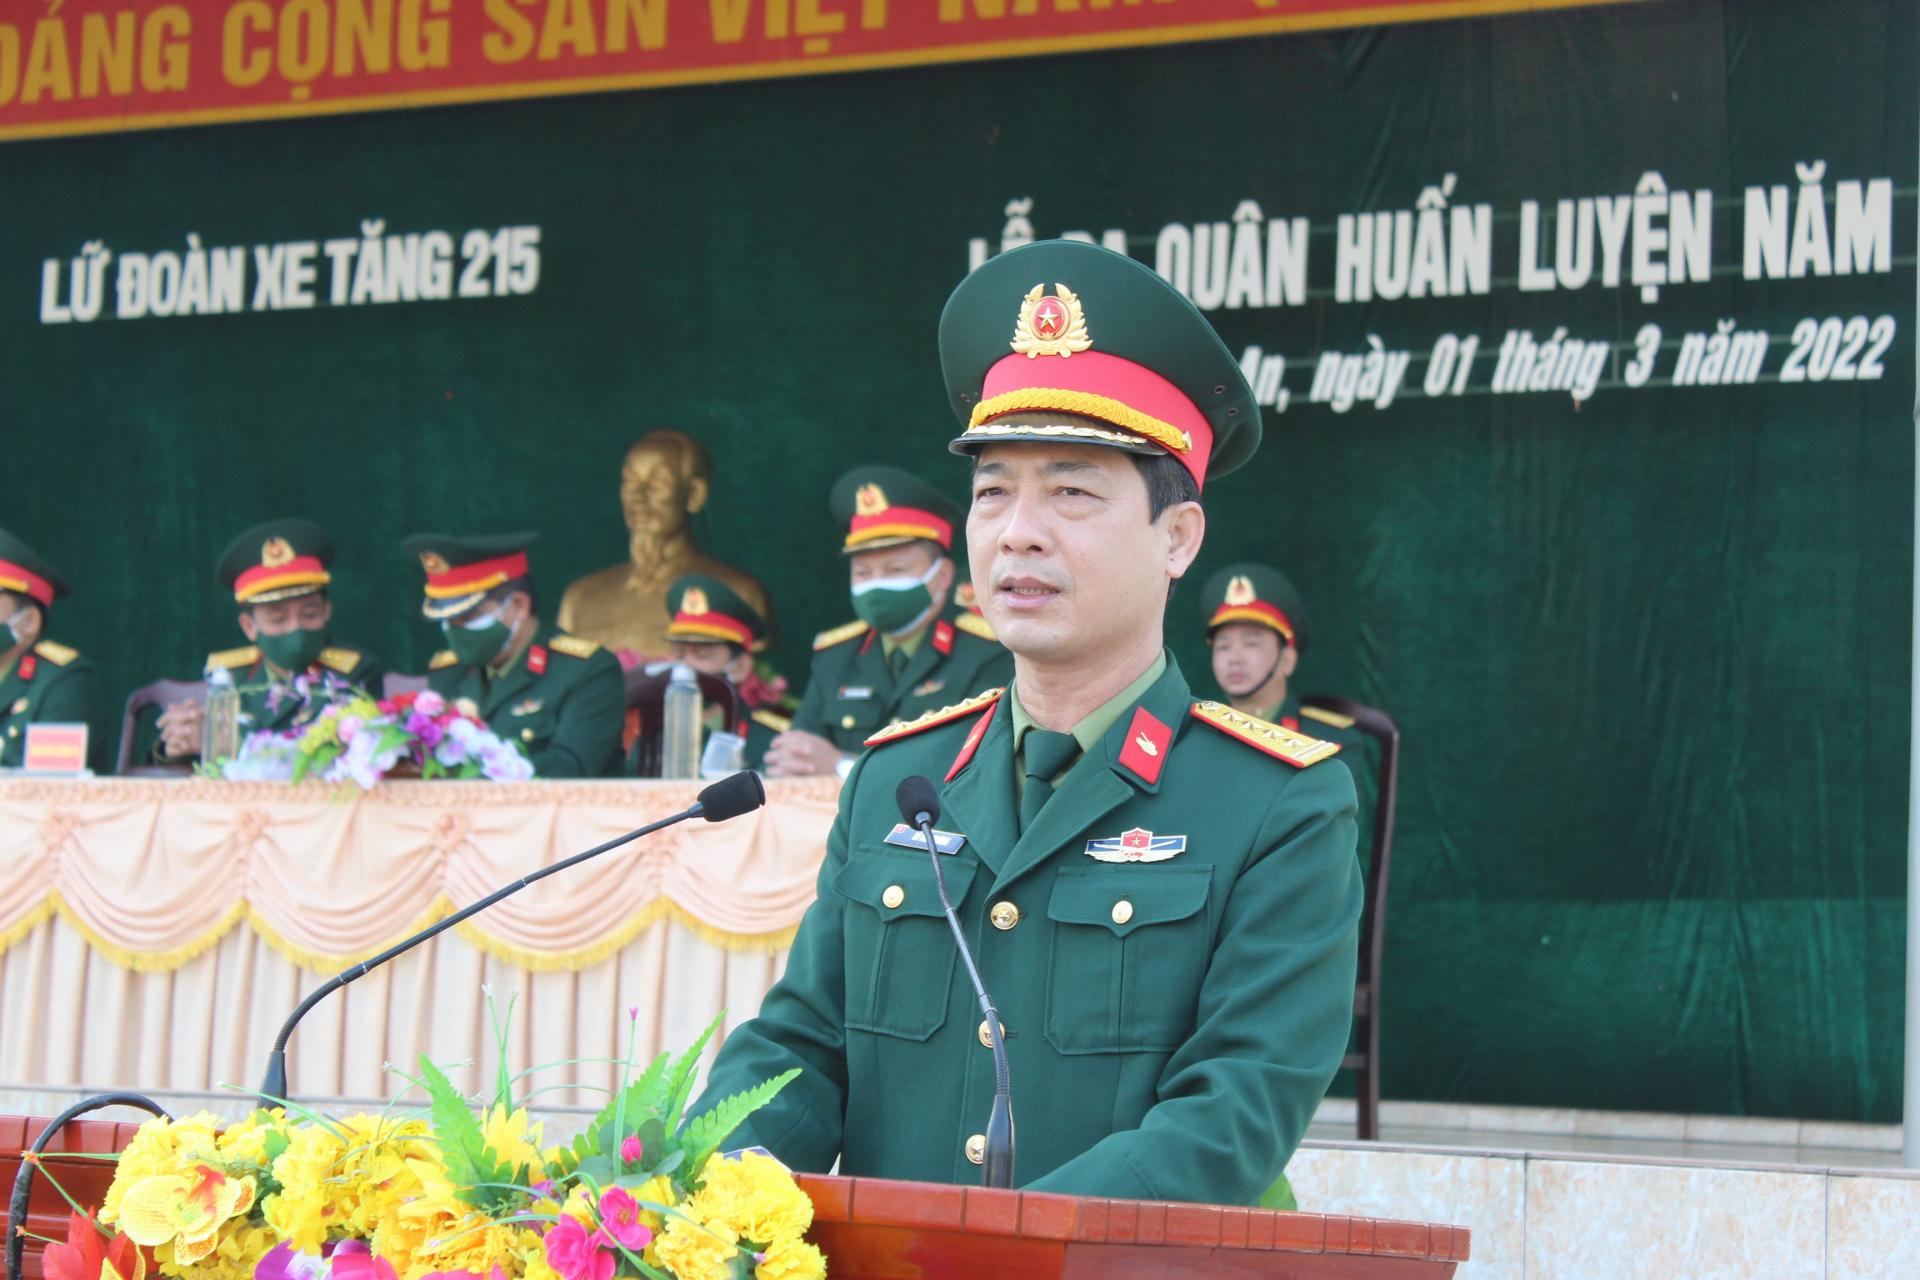 Thượng tá Trần Văn Vũ – Chính ủy Lữ đoàn xe tăng 215 phát động thi đua